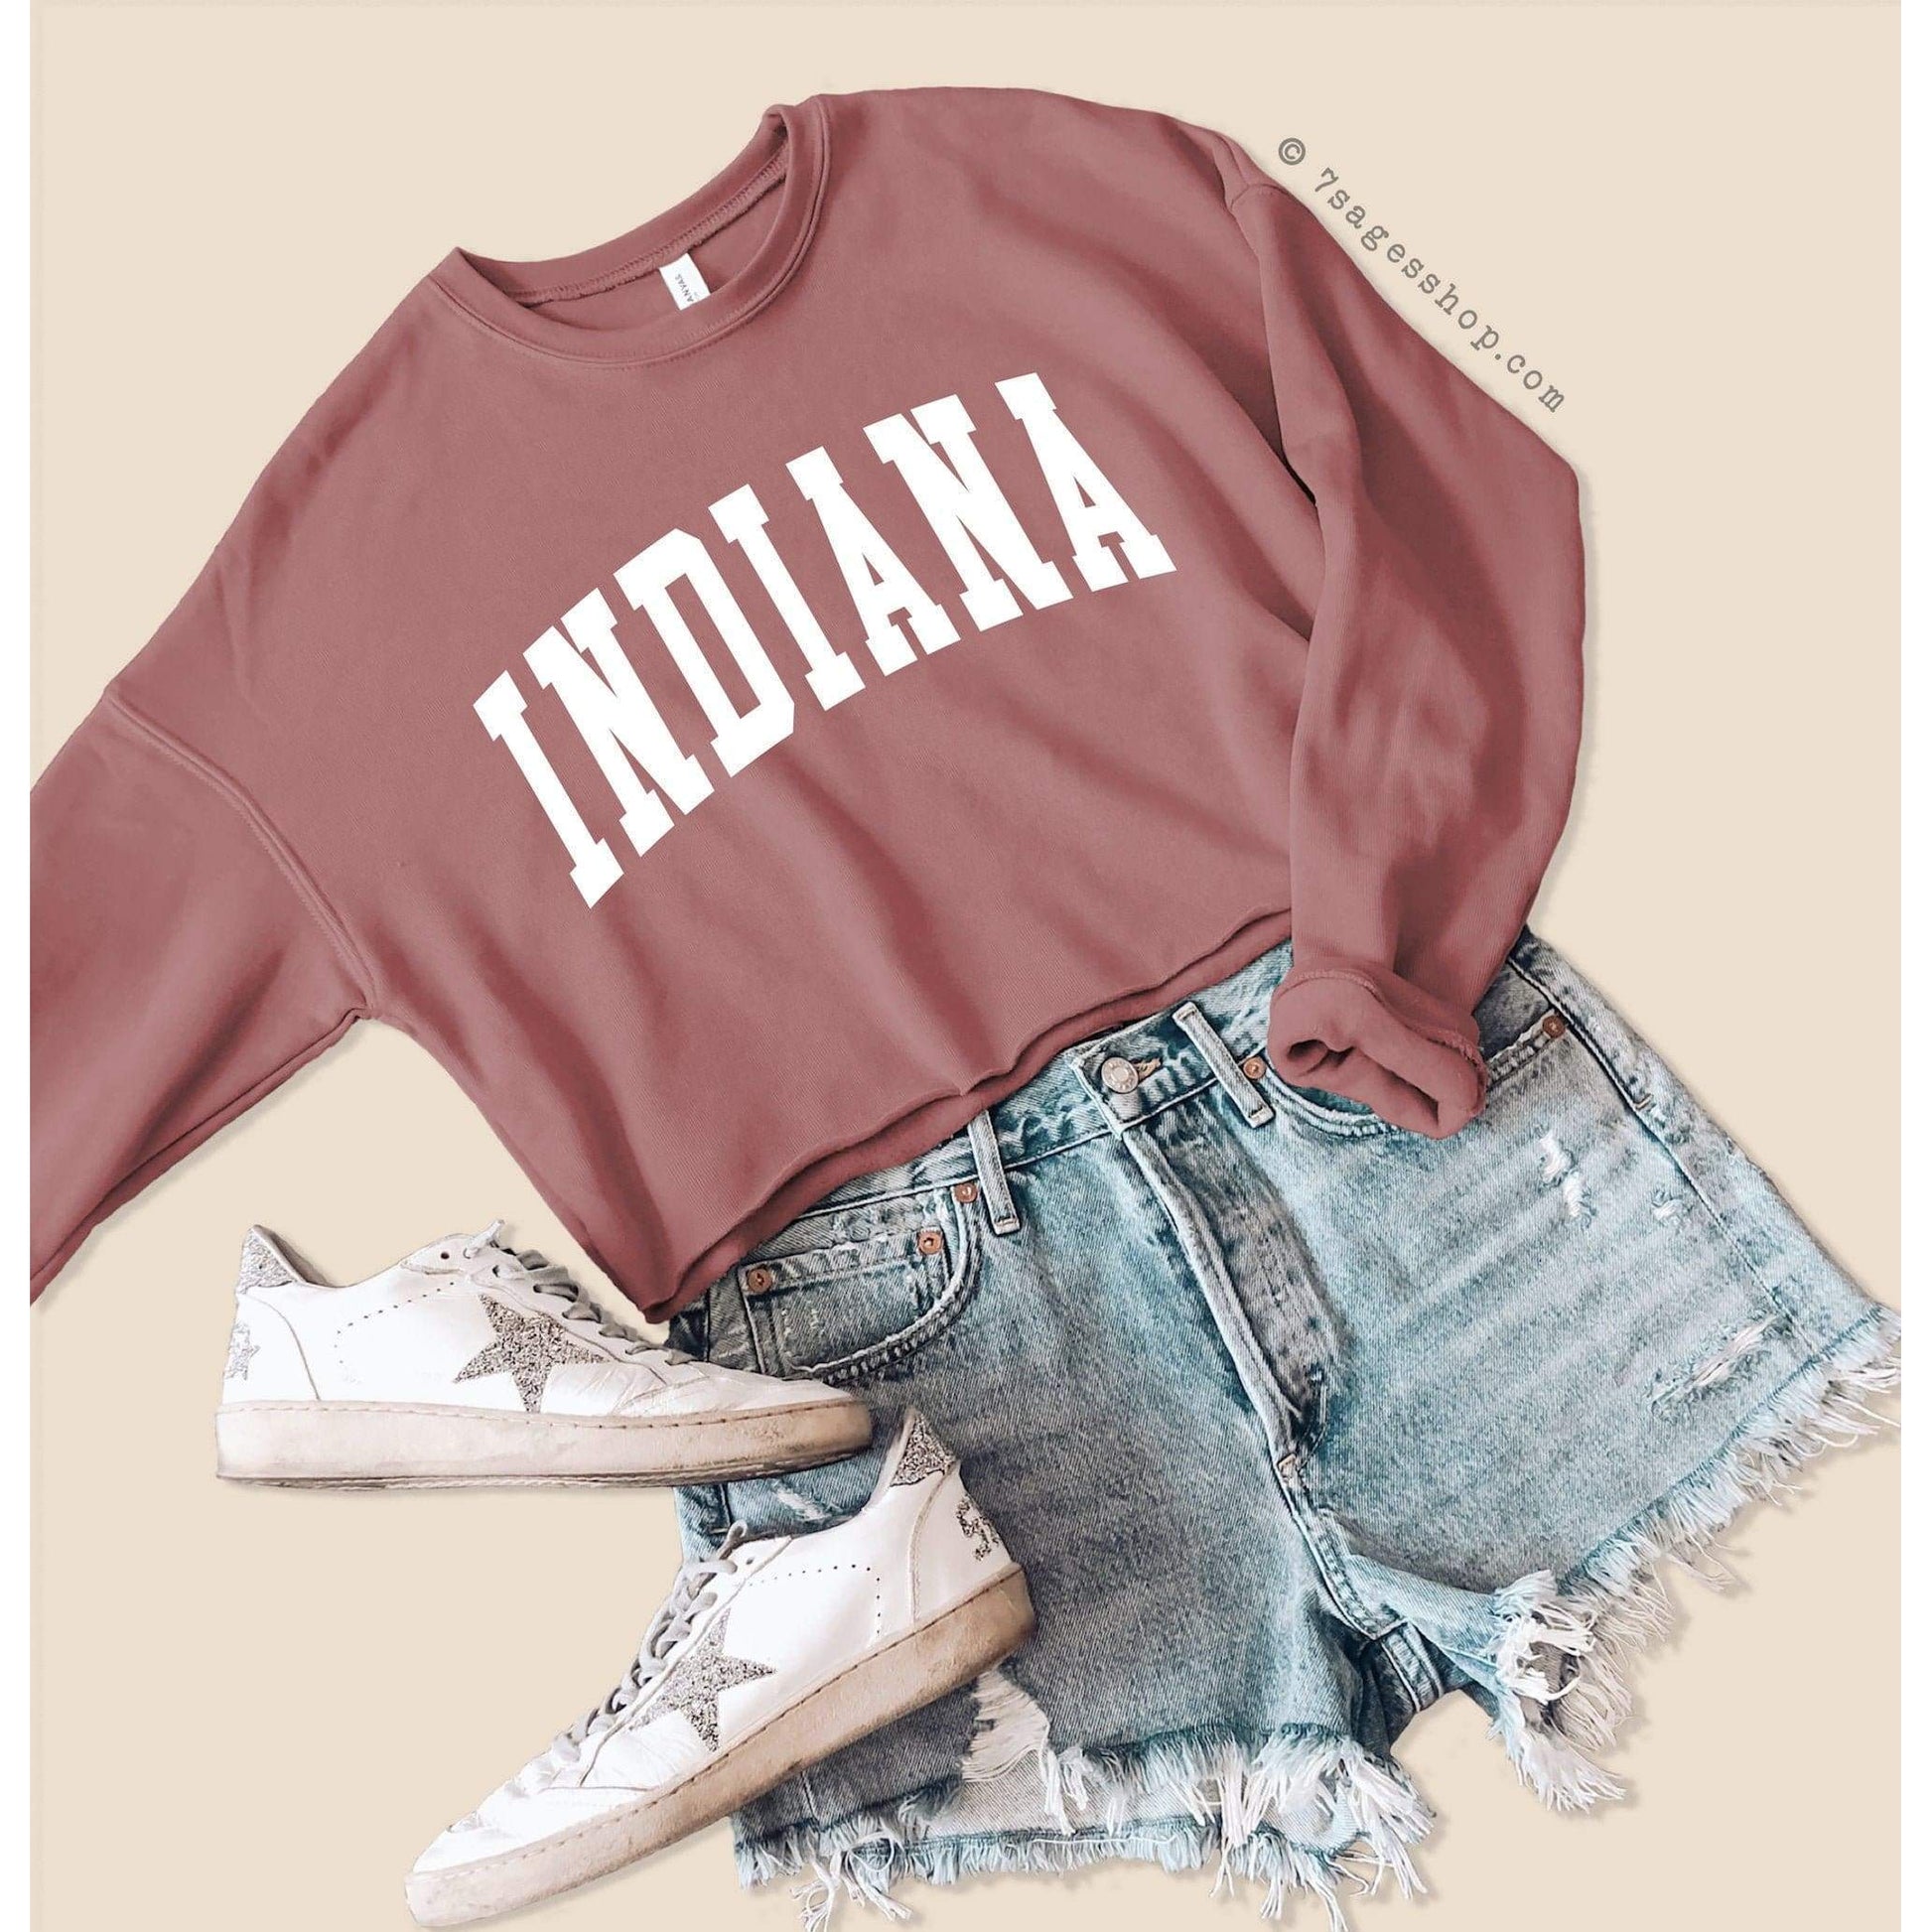 Indiana Sweatshirt - Indiana Cropped Sweatshirt - Indiana Shirts - Indiana University Crop Top - Fleece Sweatshirt - Indiana State